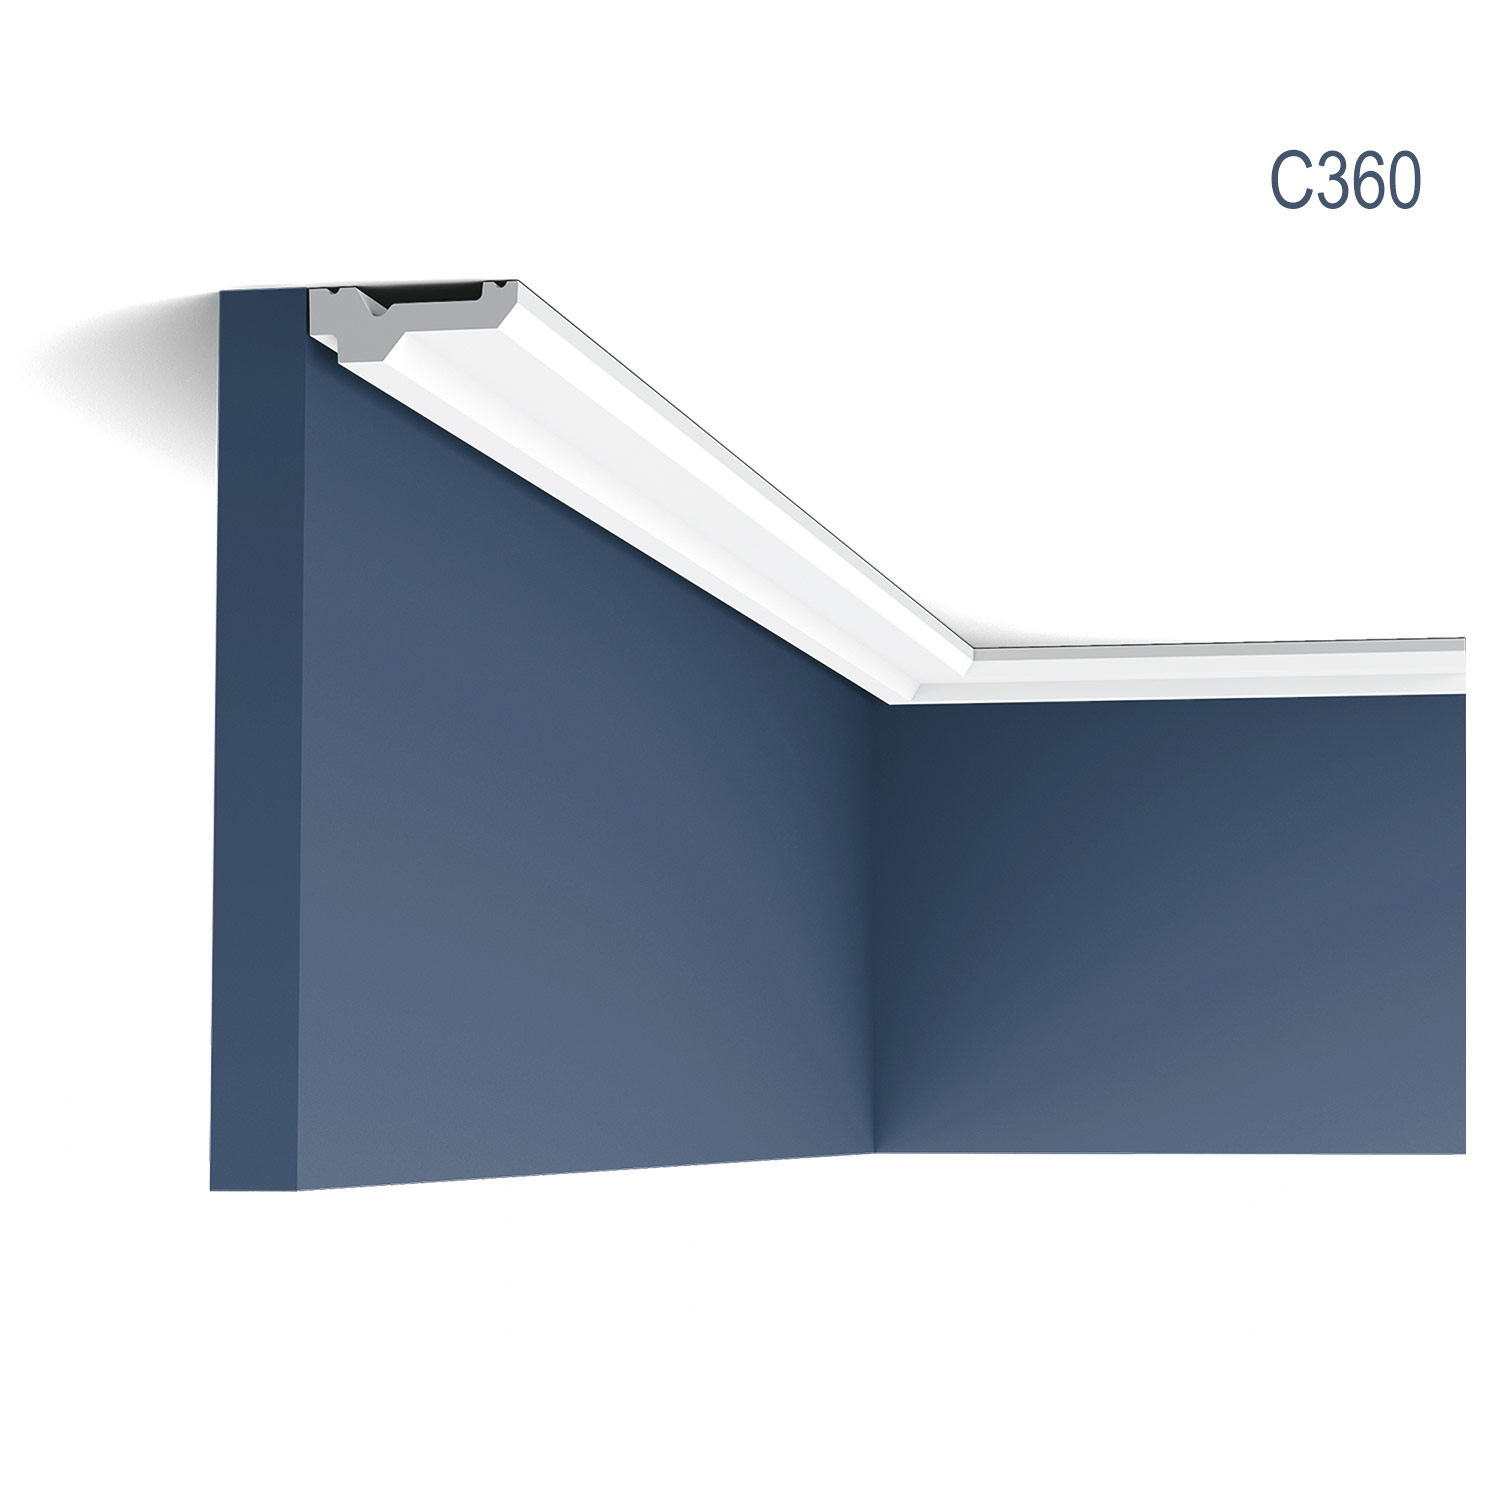 Cornisa C360 pentru tavan, alba, vopsibila, rigida, calitate excelenta, Belgia, din Poliuretan rigid, L 200 x H 2.1 x W 6 cm